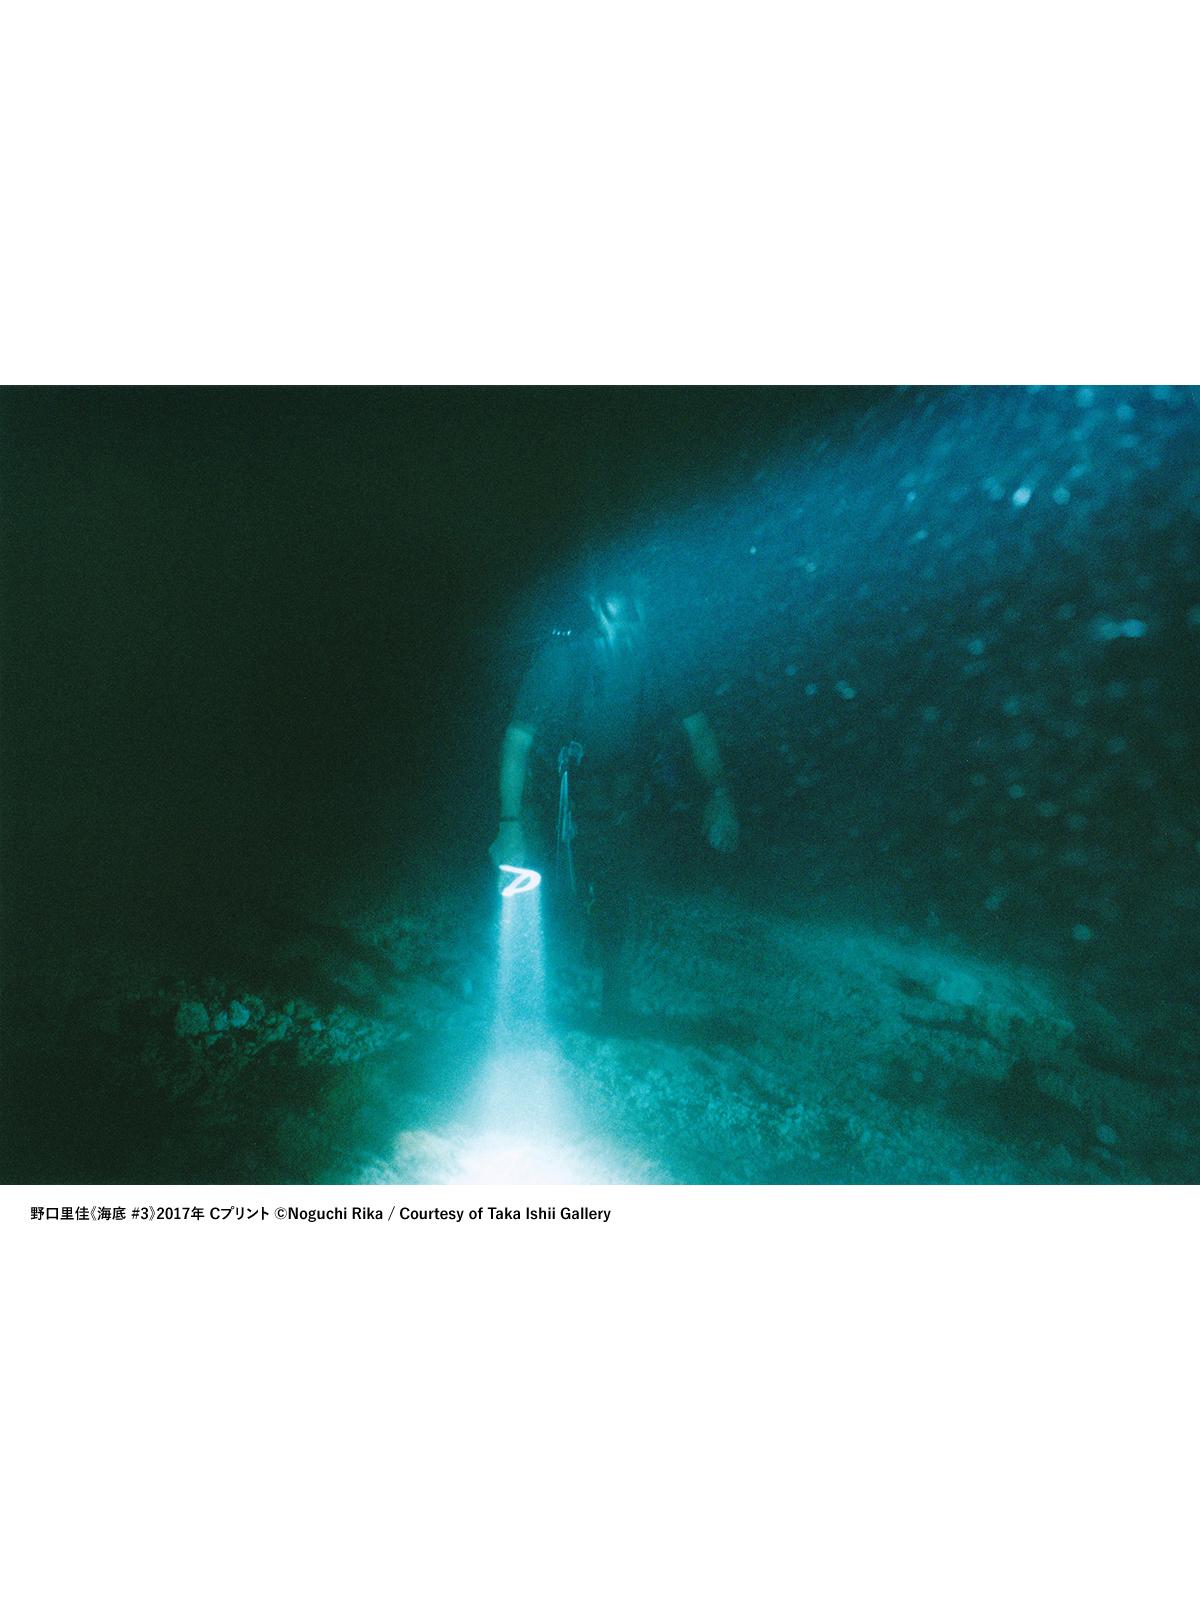 新作は、海底の月面？写真家・野口里佳が、沖縄の海底で見つけた光の環。個展『海底』がタカ・イシイギャラリーで開催中